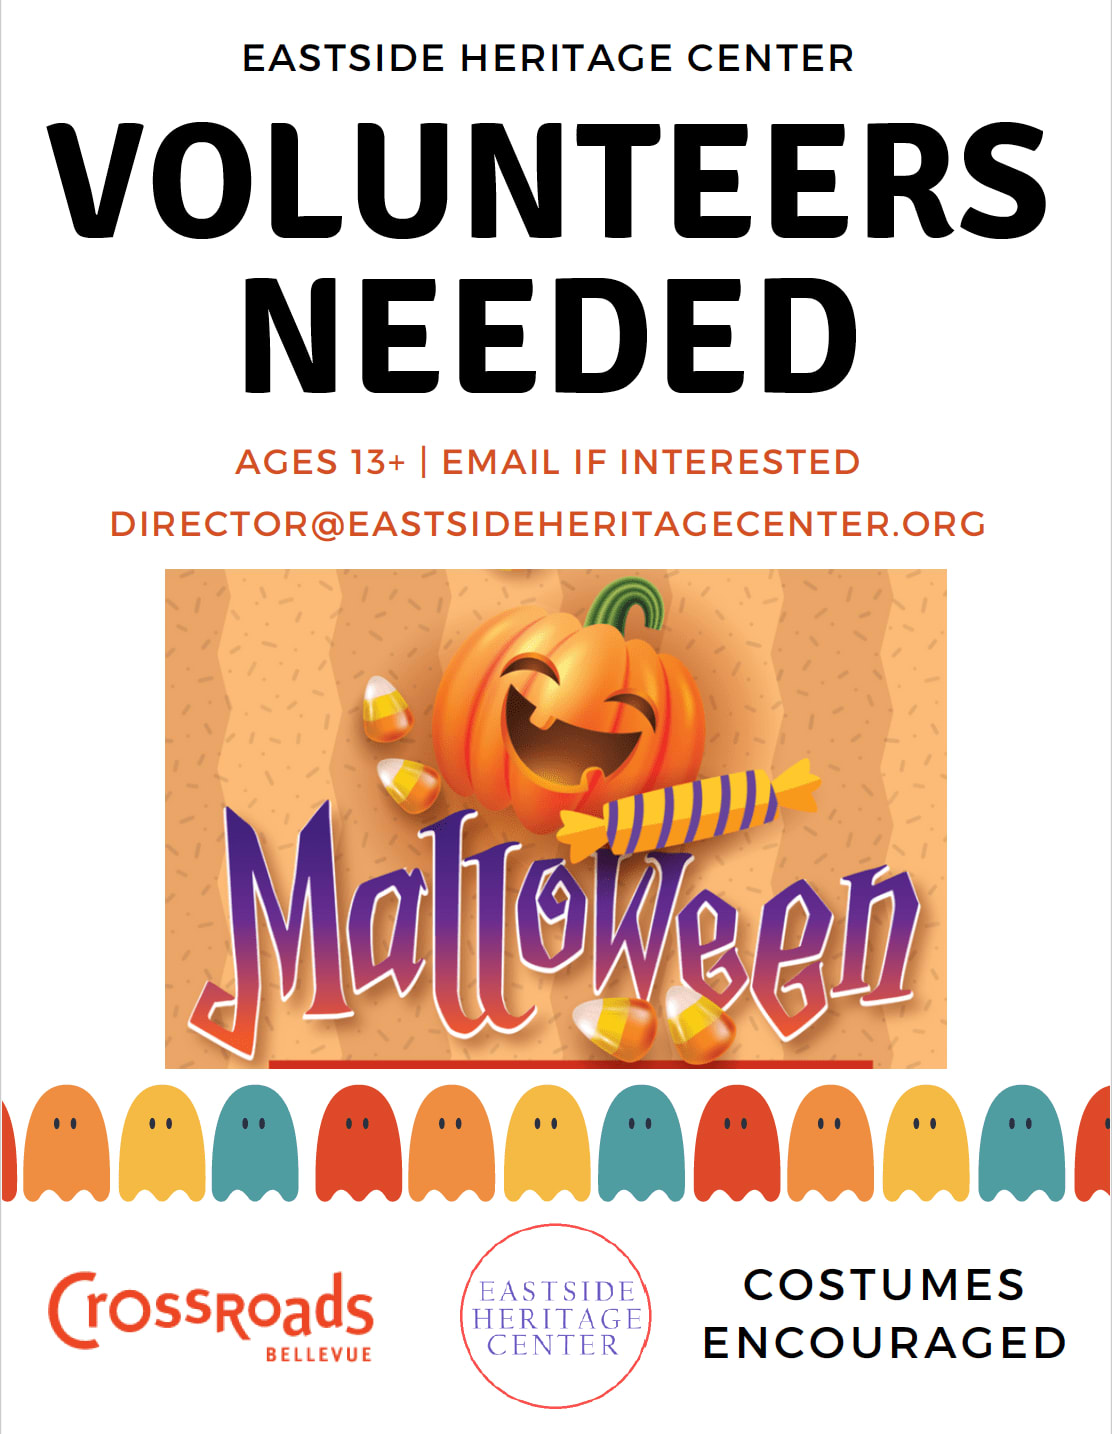 TrickorTreat Volunteers Needed For Crossroads Bellevue MallOWeen